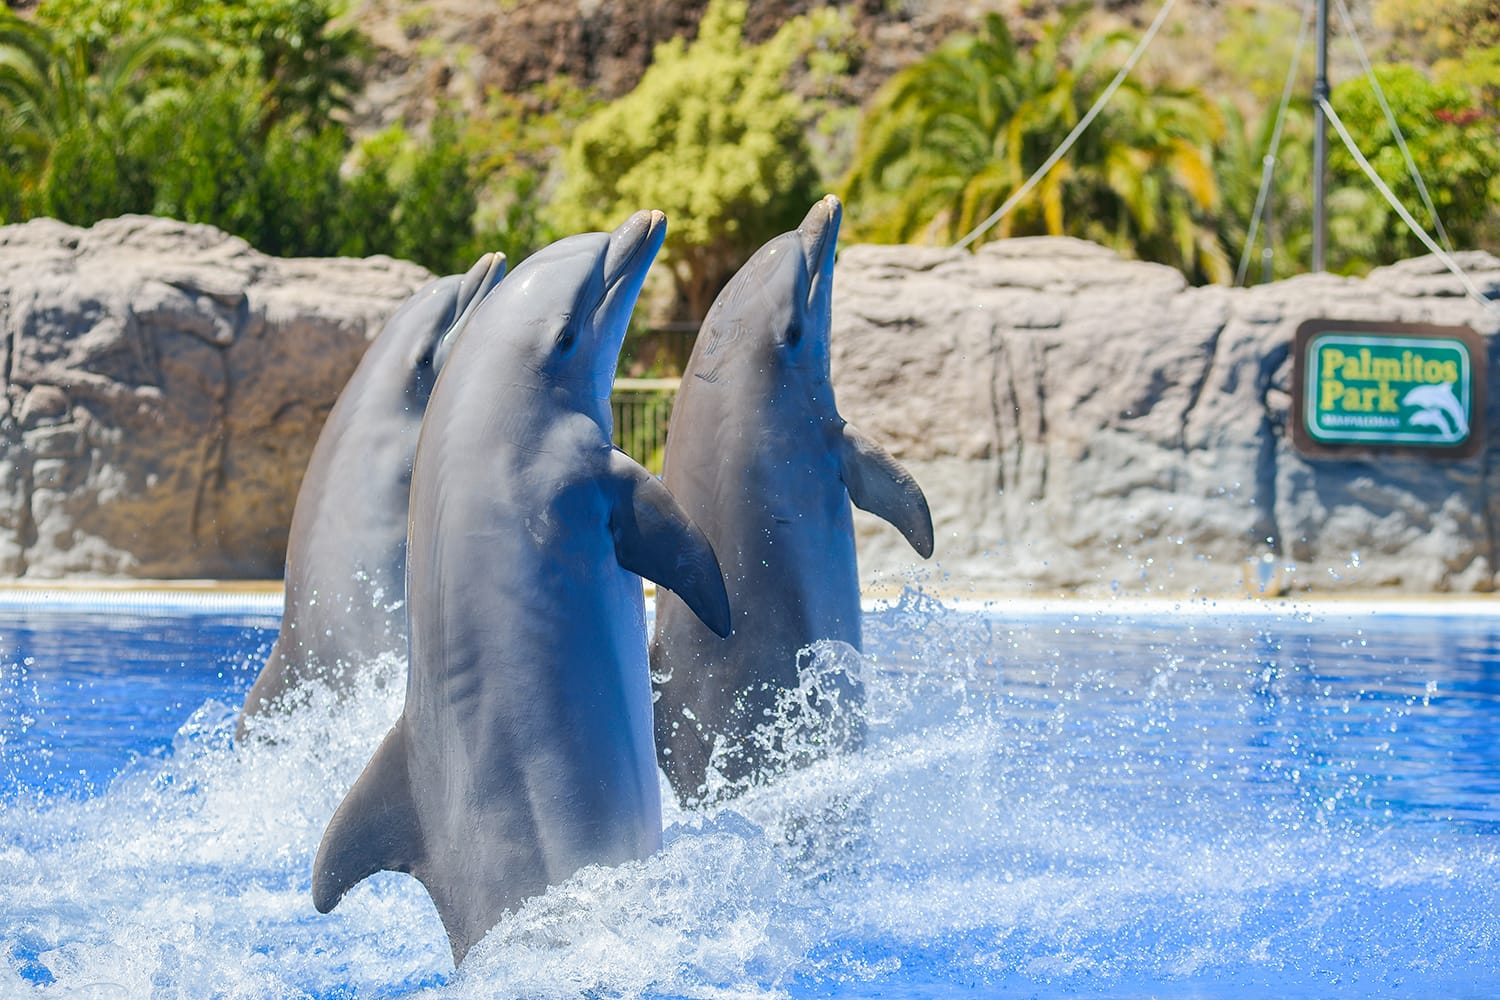 Εμφάνιση δελφινιών στο πάρκο Palmitos στο Maspalomas, Γκραν Κανάρια, Ισπανία